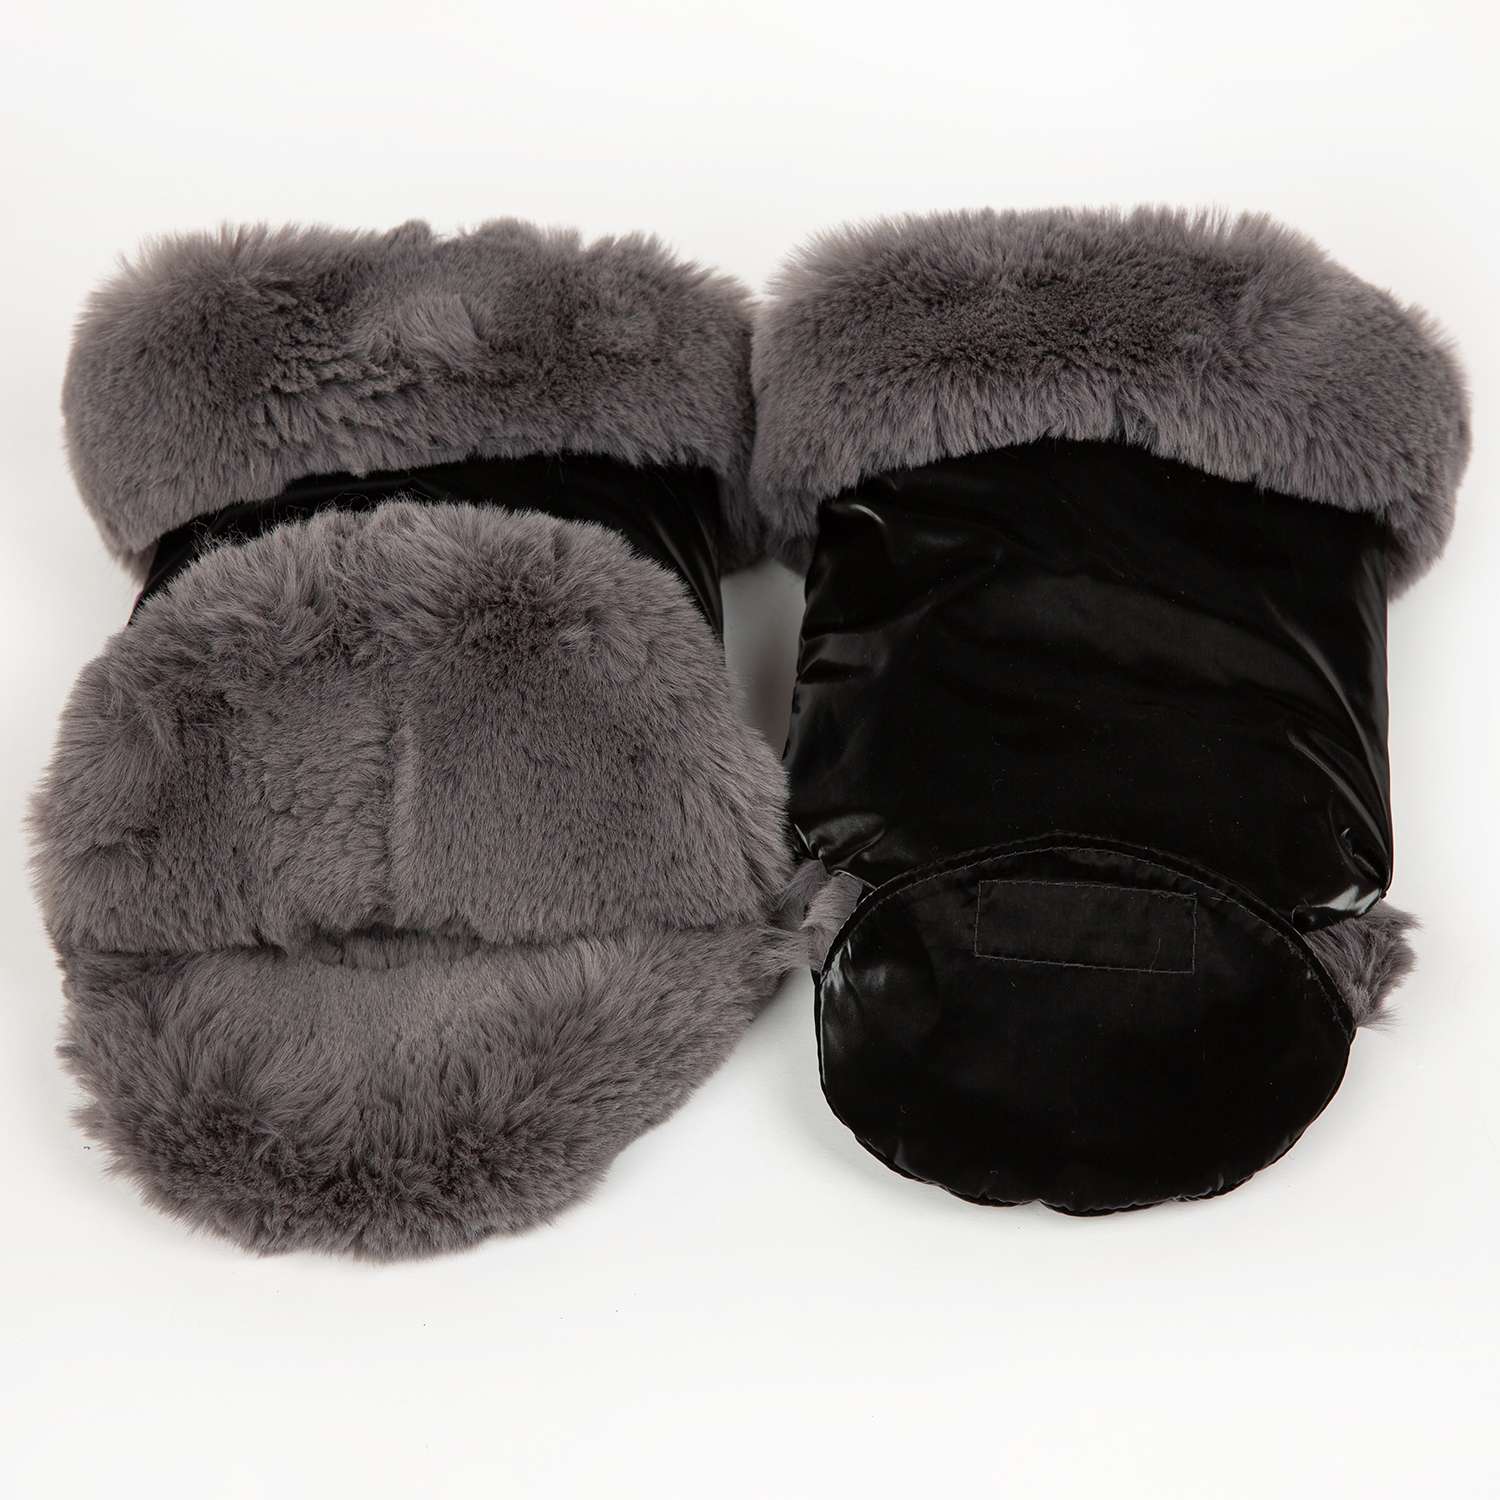 Муфта-рукавички для коляски inlovery Lakke/черный МРЛ01-003 - фото 4